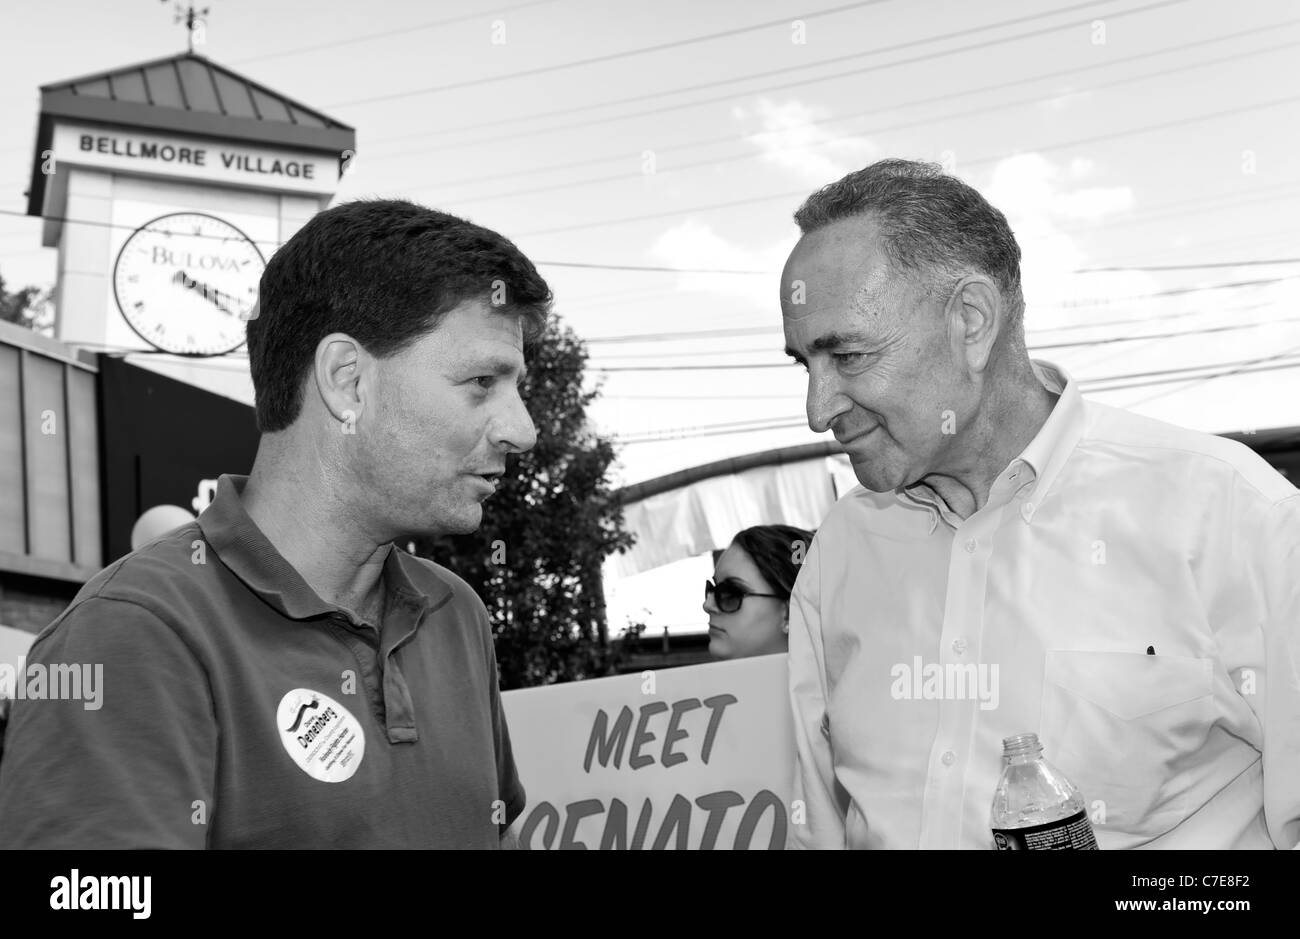 Legislator Dave Denenberg and U. S. Senator Charles E. Schumer at Bellmore Street Festival, New York September 18 2011 Stock Photo